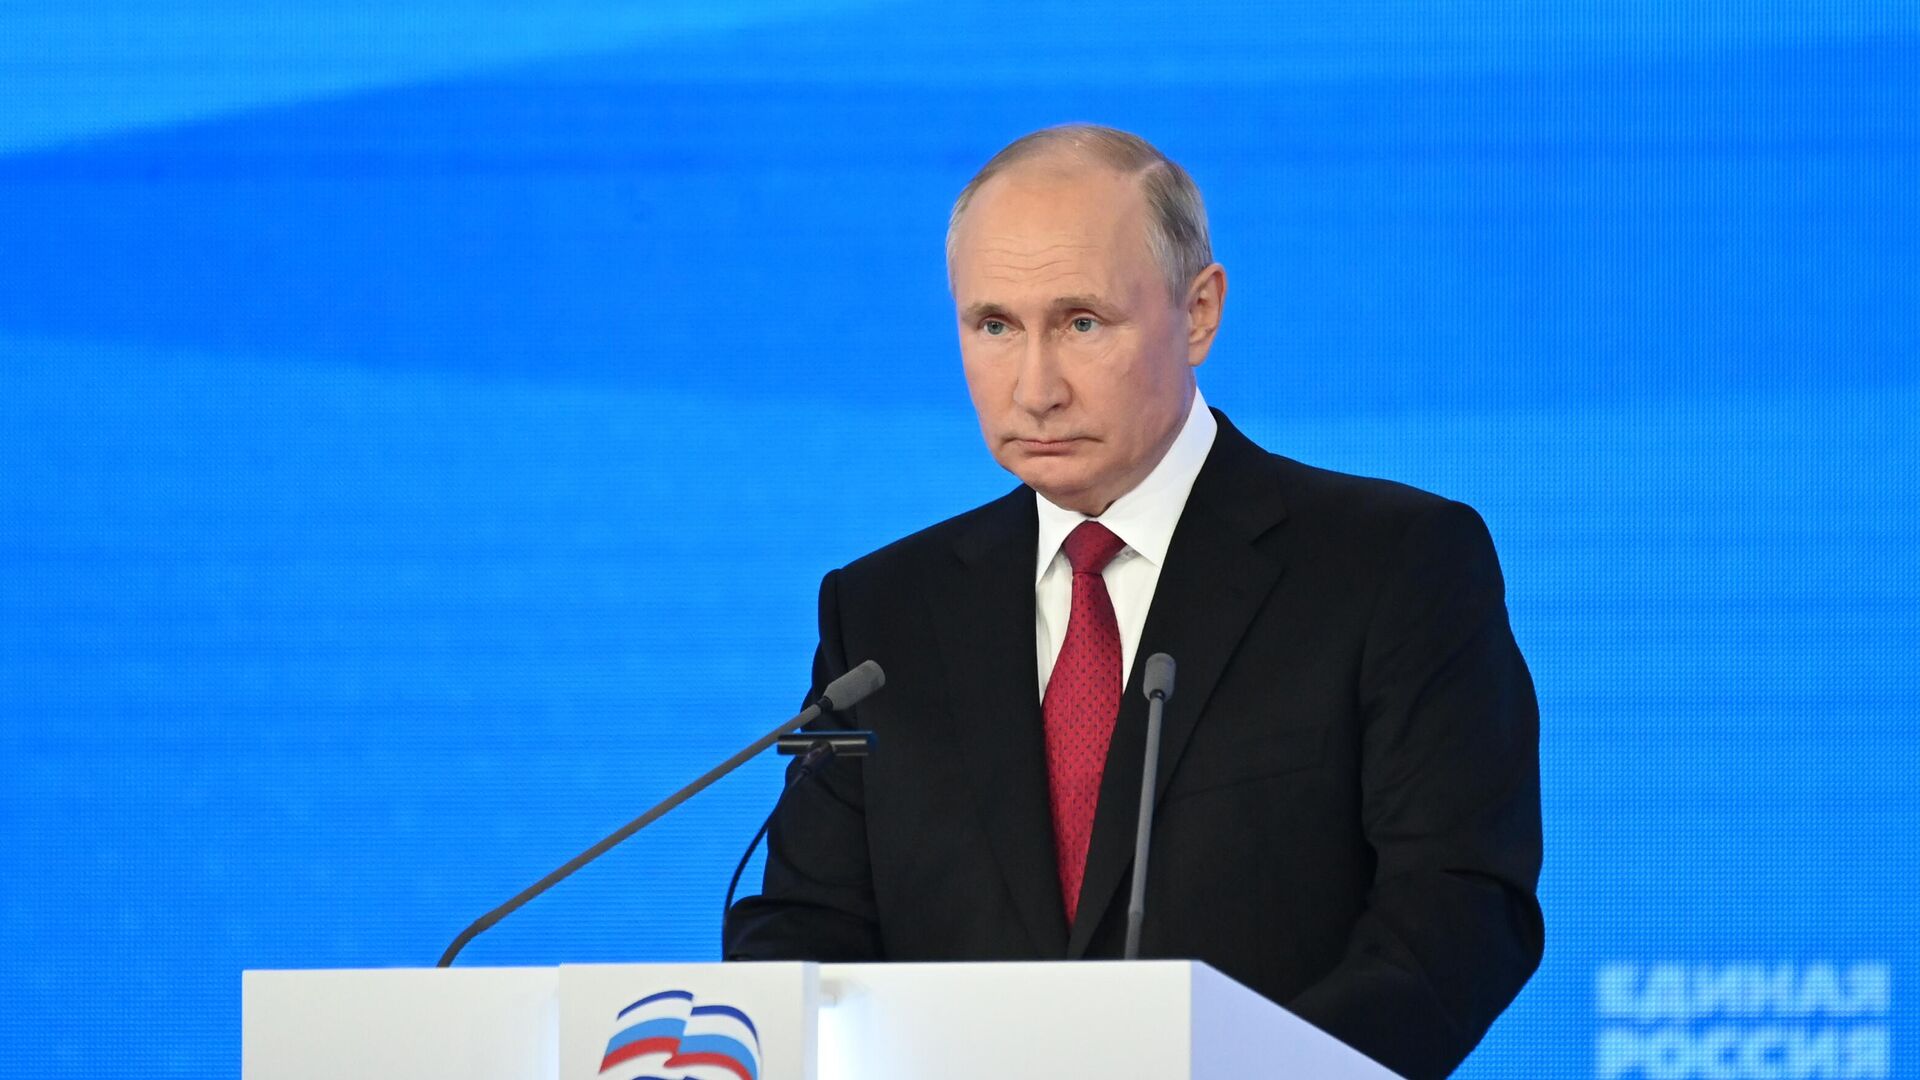 Политологи рассказали об ожиданиях от прямой линии с Путиным